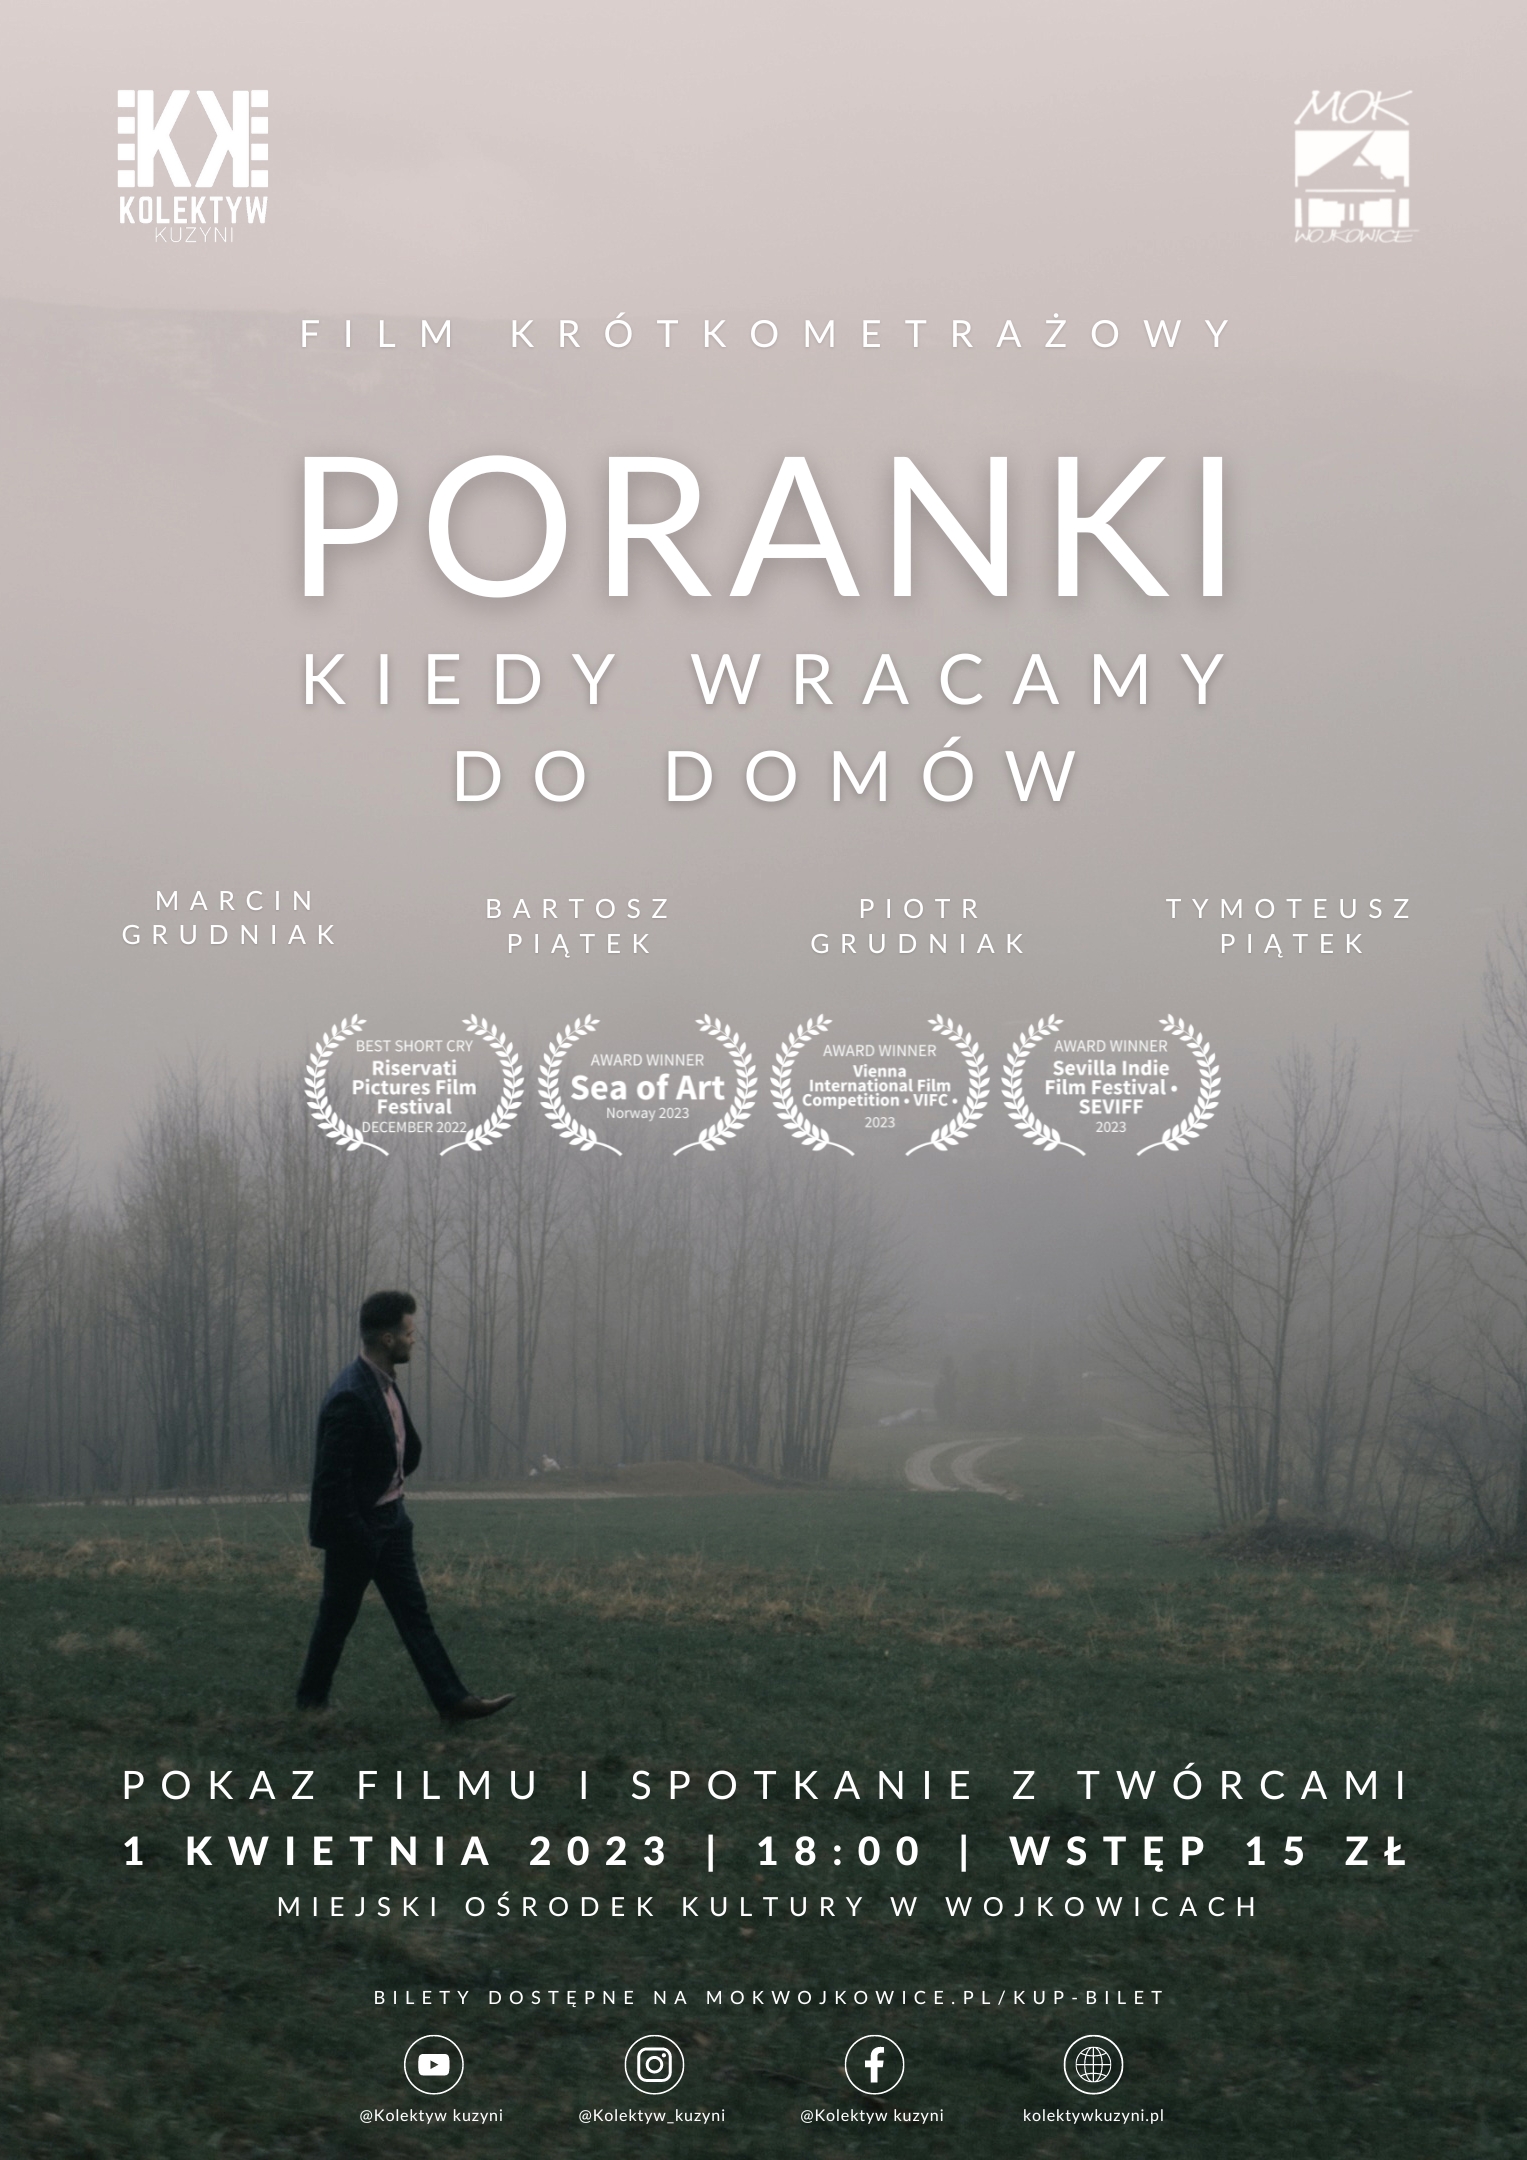 plakat informujący o pokazie filmu krótkometrażowego "Poranki, kiedy wracamy do domów" i spotkaniu z twórcami - Kolektywem Kuzyni